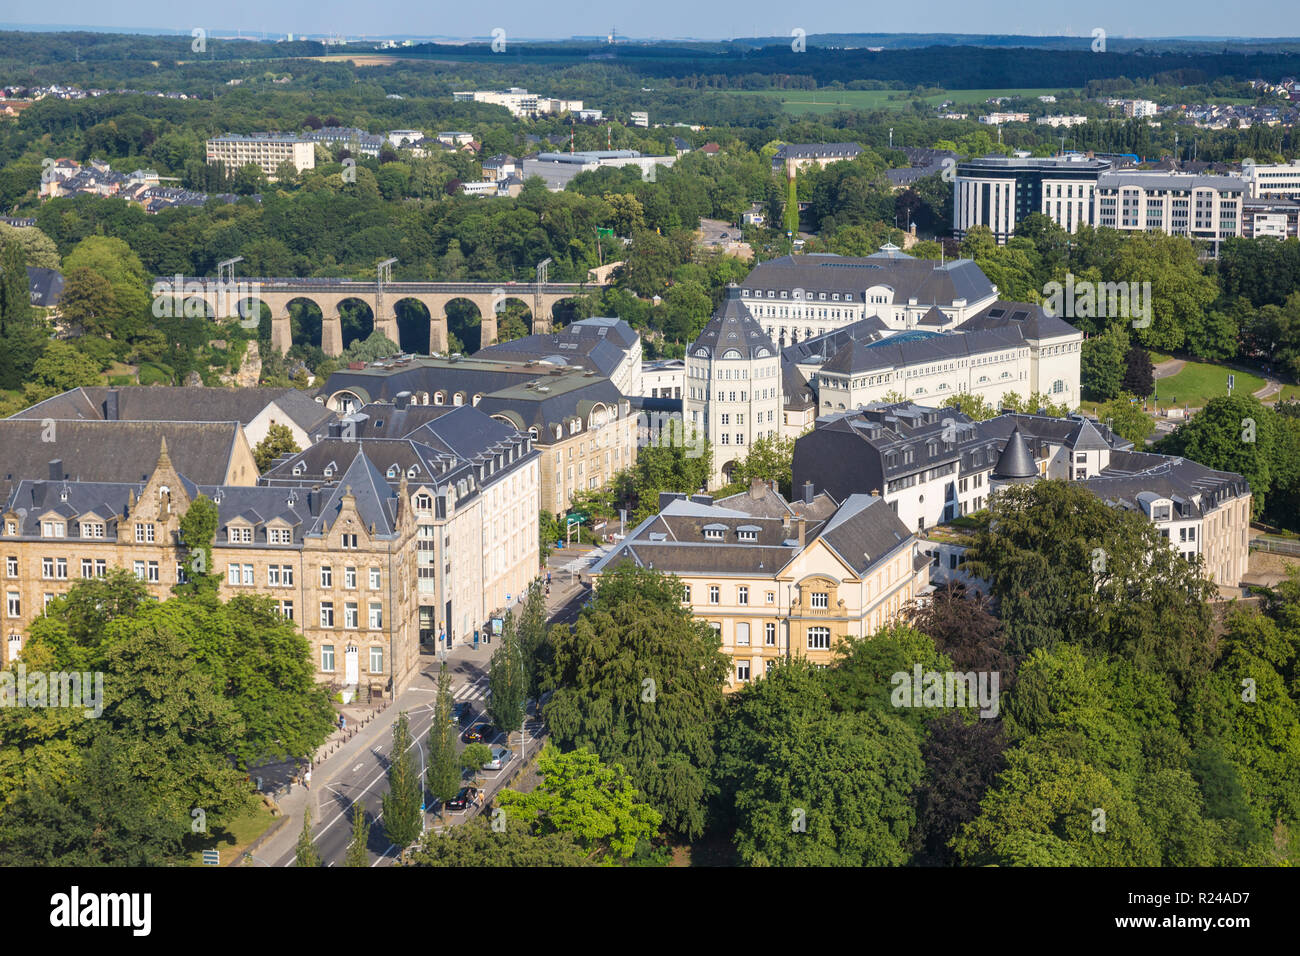 Blick auf die Stadt in Richtung der Justiz Stadt und Bahn Viadukt, der Stadt Luxemburg, Luxemburg, Europa suchen Stockfoto